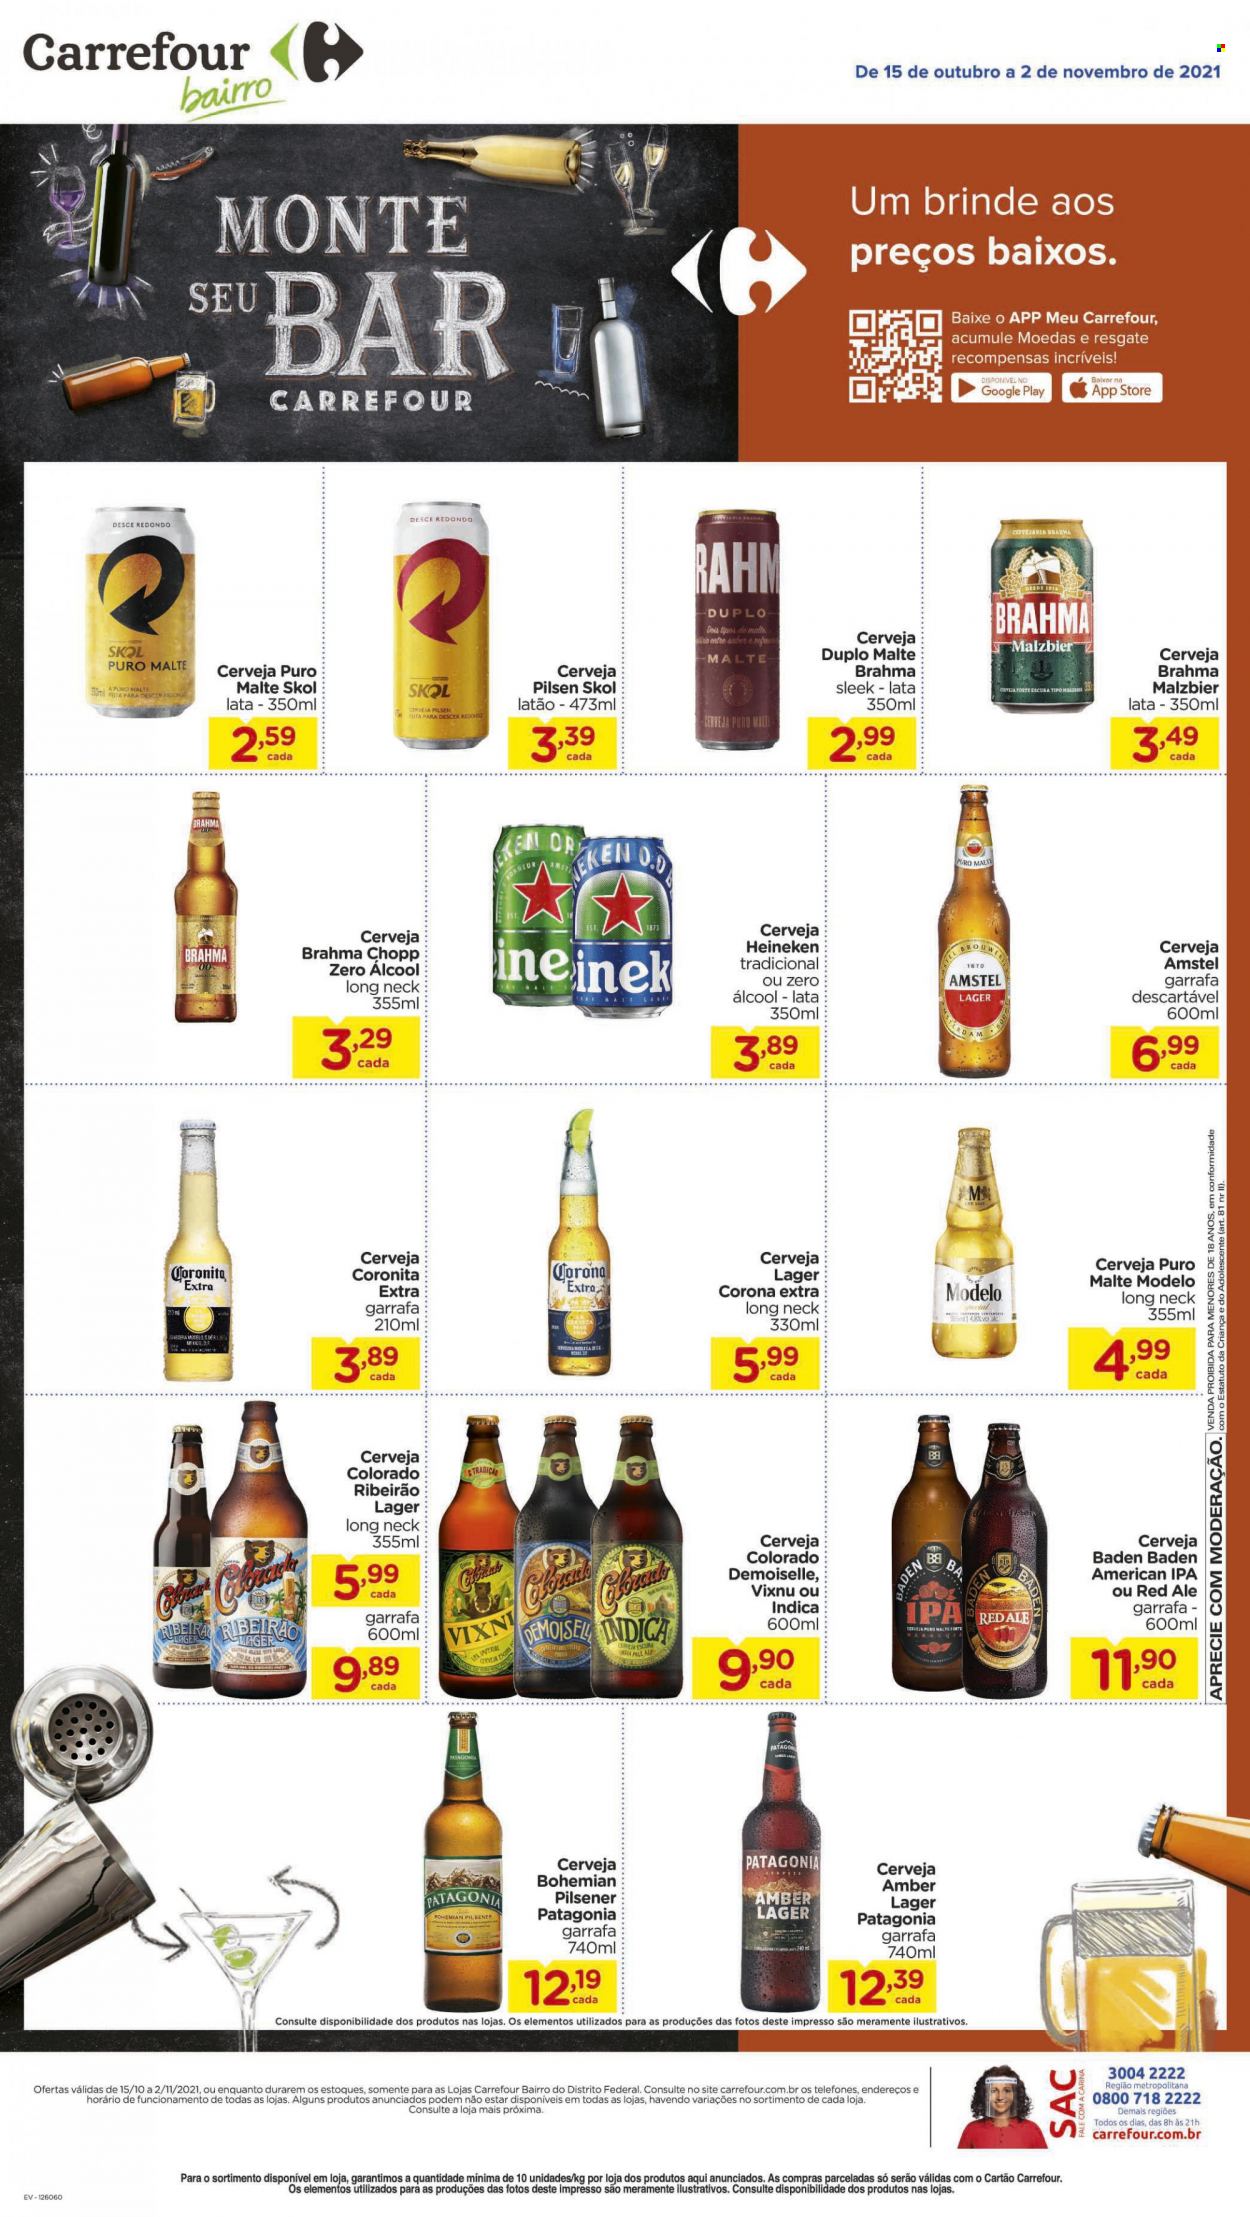 thumbnail - Folheto Carrefour Bairro - 15/10/2021 - 02/11/2021 - Produtos em promoção - Corona, cerveja Colorado, Heineken, Patagonia, Skol, Amstel, Brahma, cerveja, Puro Malte, garrafa. Página 1.